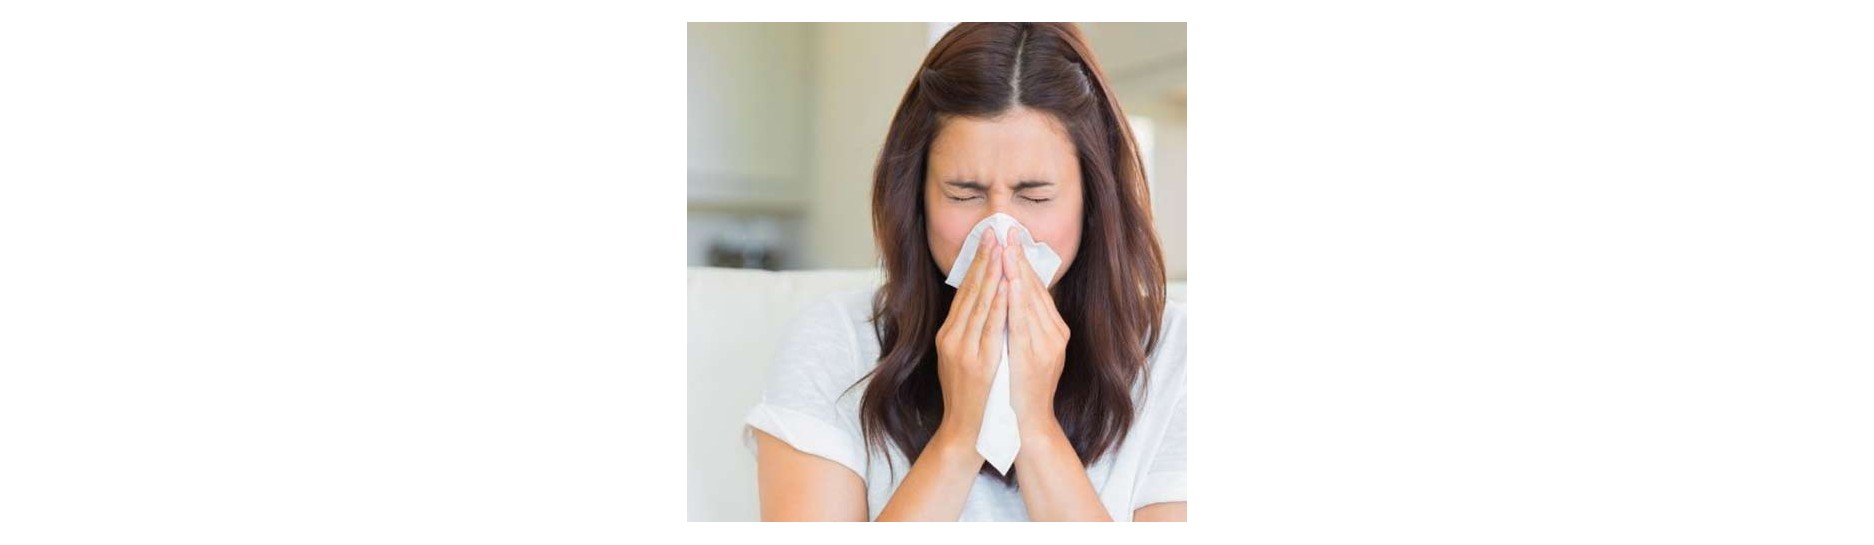 Ecco i rimedi naturali per le allergie.